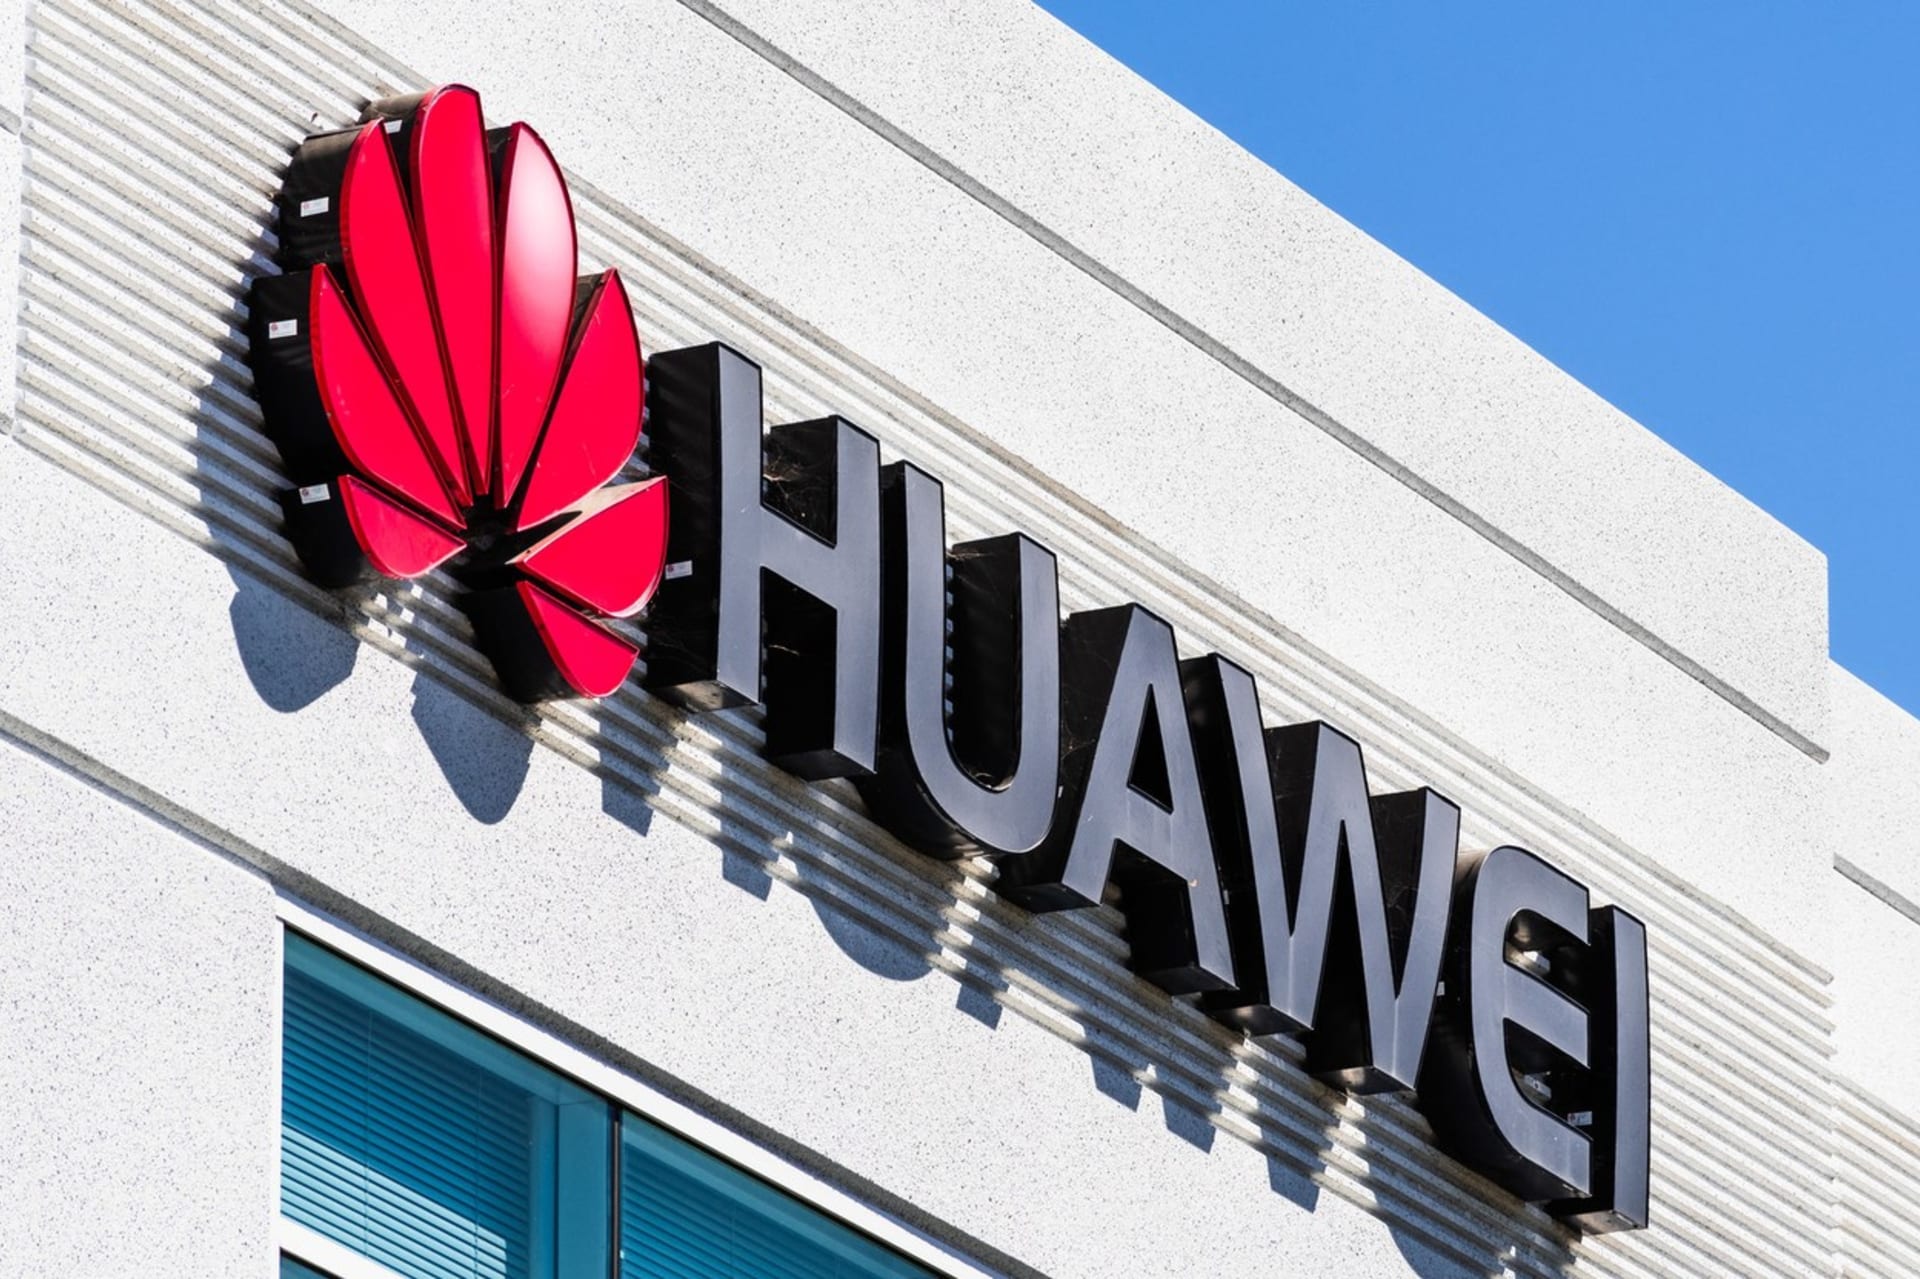 Čínské společnosti Huawei zařazení na americkou černou listinu vlastně vůbec neuškodilo